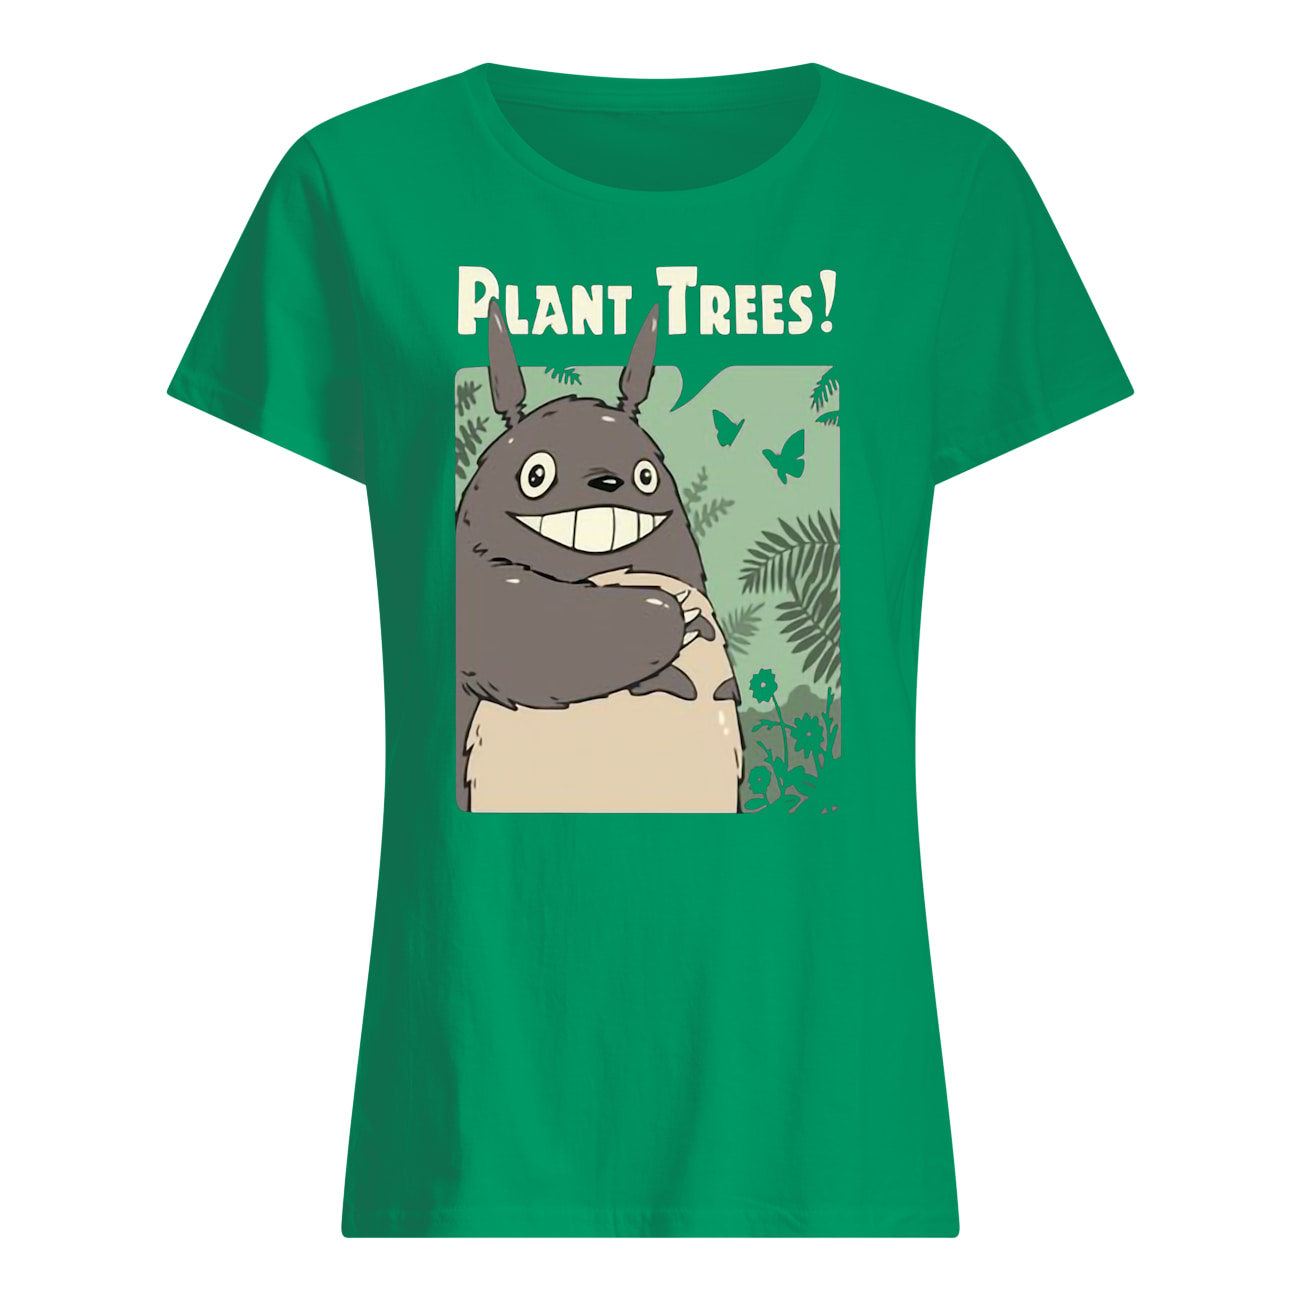 Totoro studio ghibli plant trees womens shirt